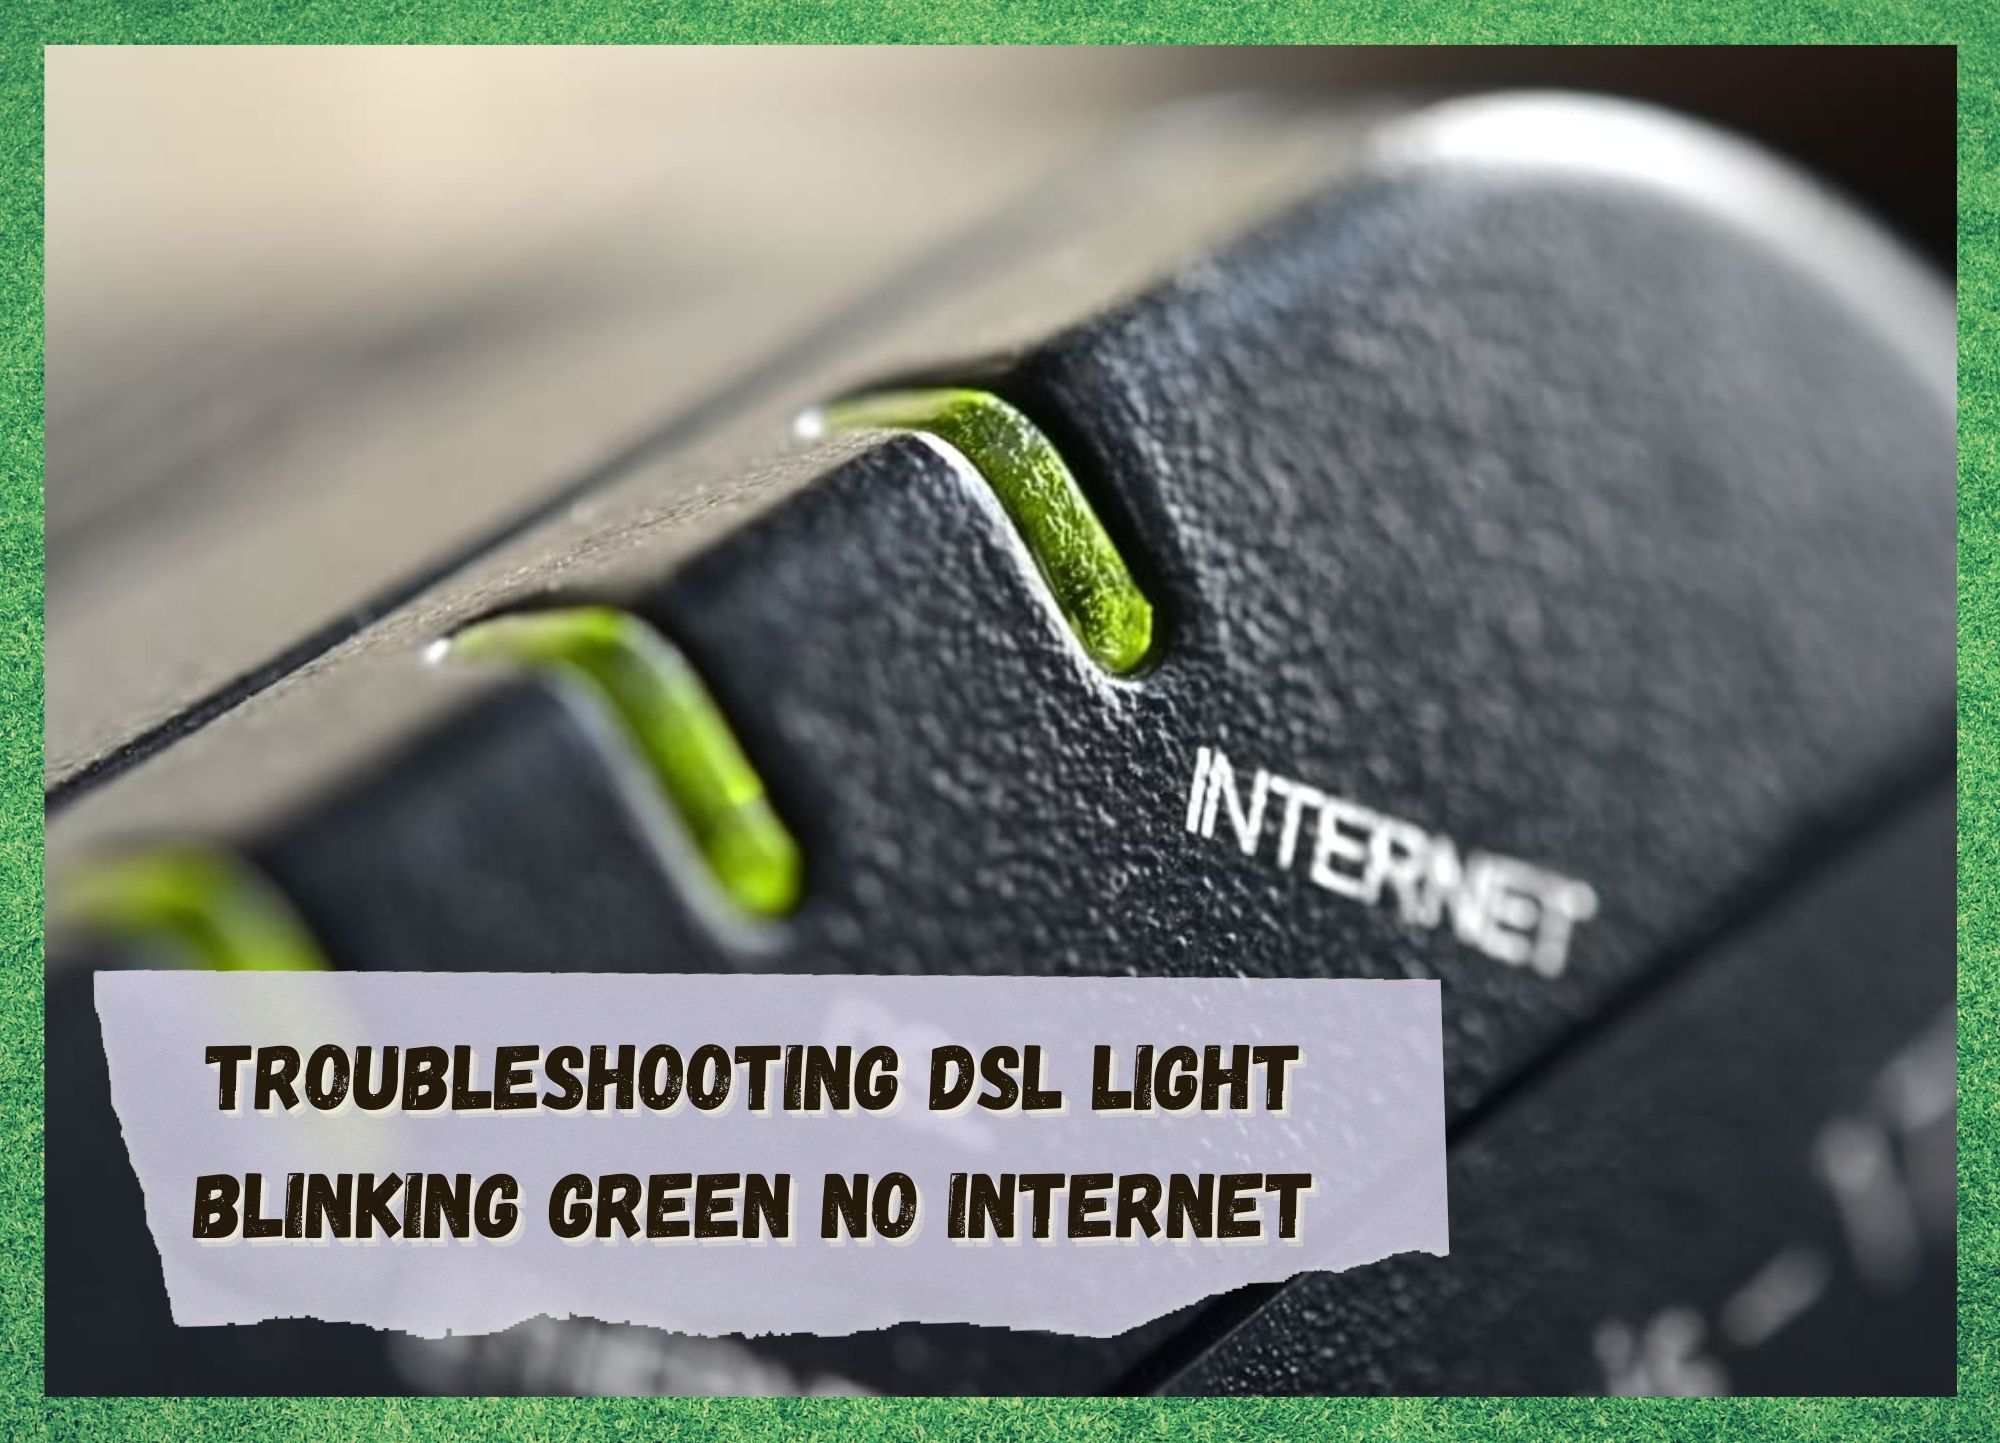 DSL-lampan blinkar grönt men inget internet (5 sätt att åtgärda det)